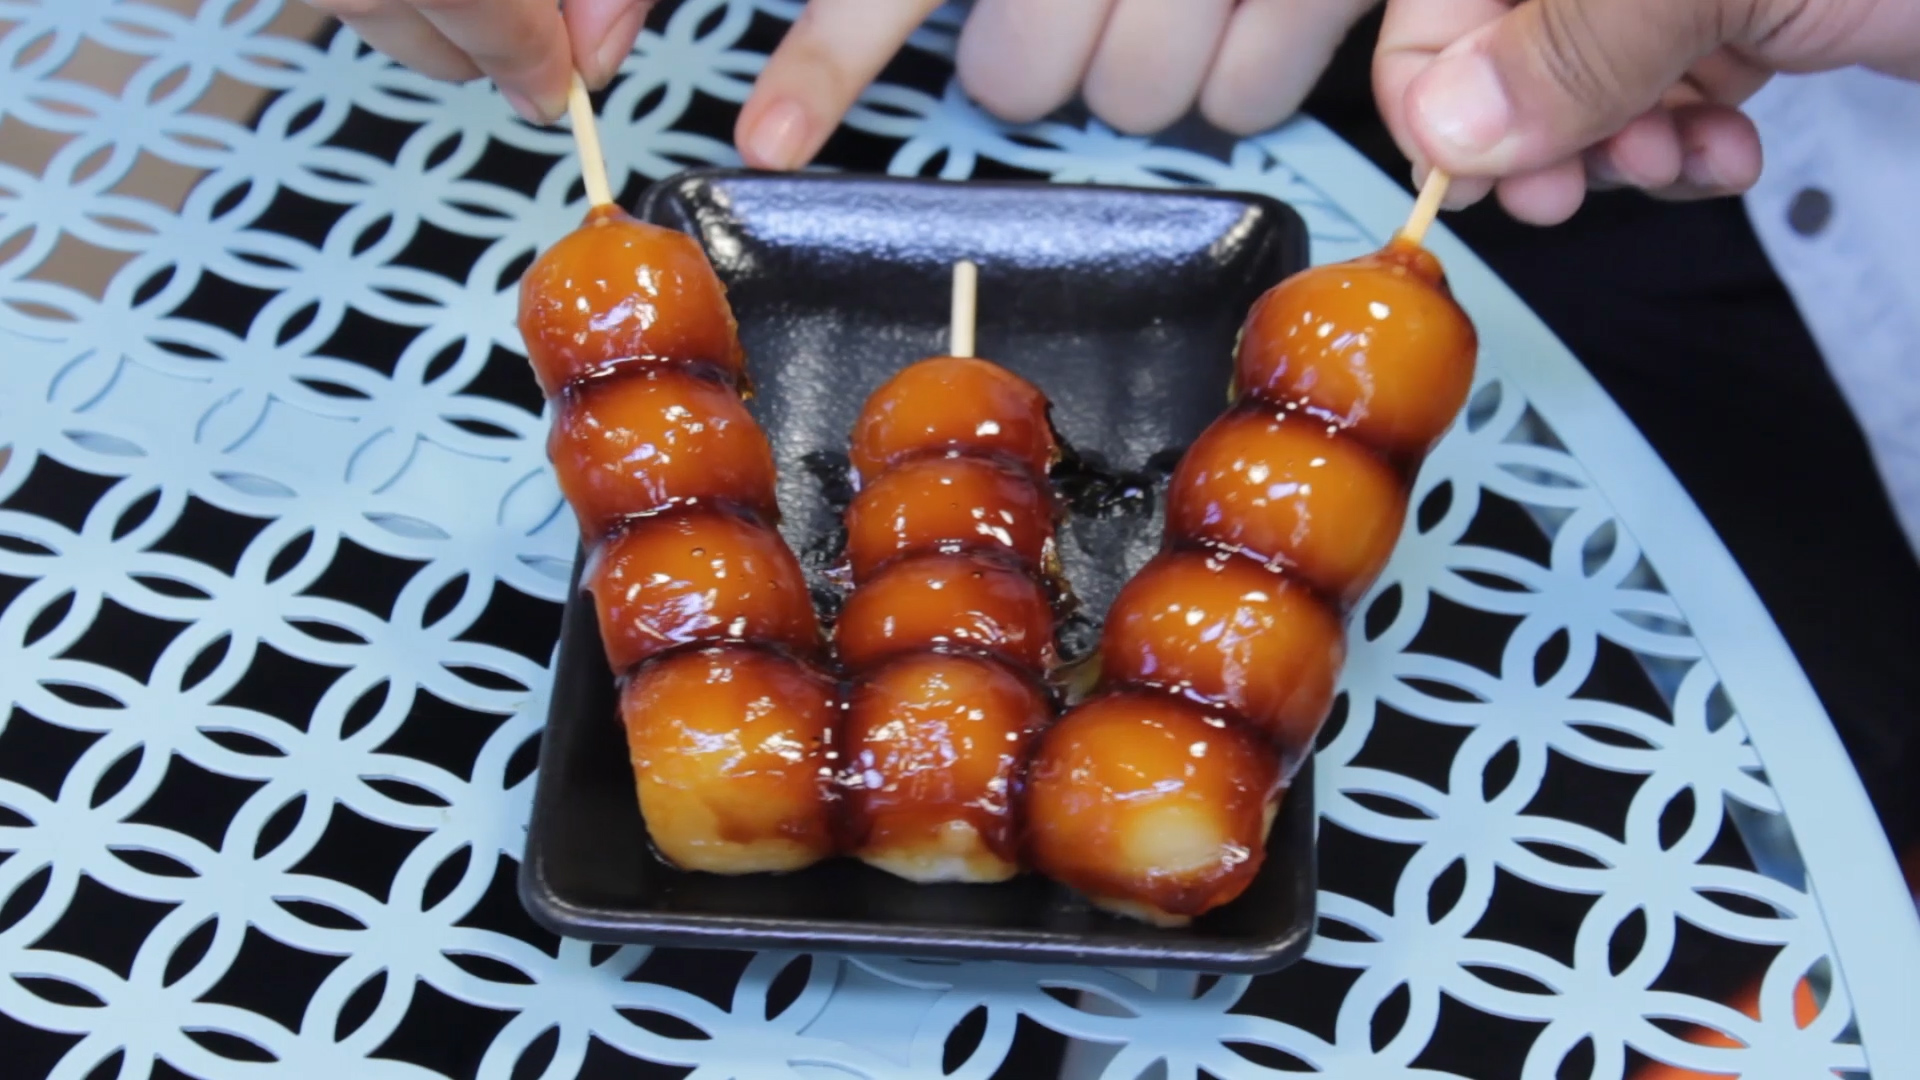 Wagashi:  Japanese sweets